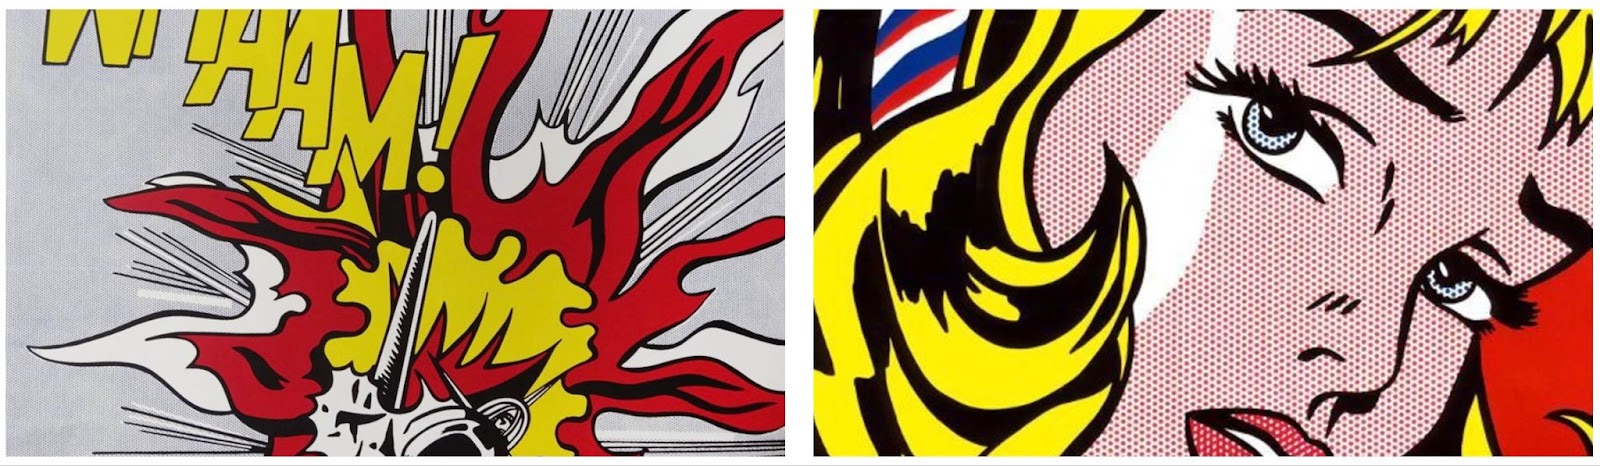 Roy Lichtenstein'ın Whaam! (1963) ve Ağlayan Kız (1963)